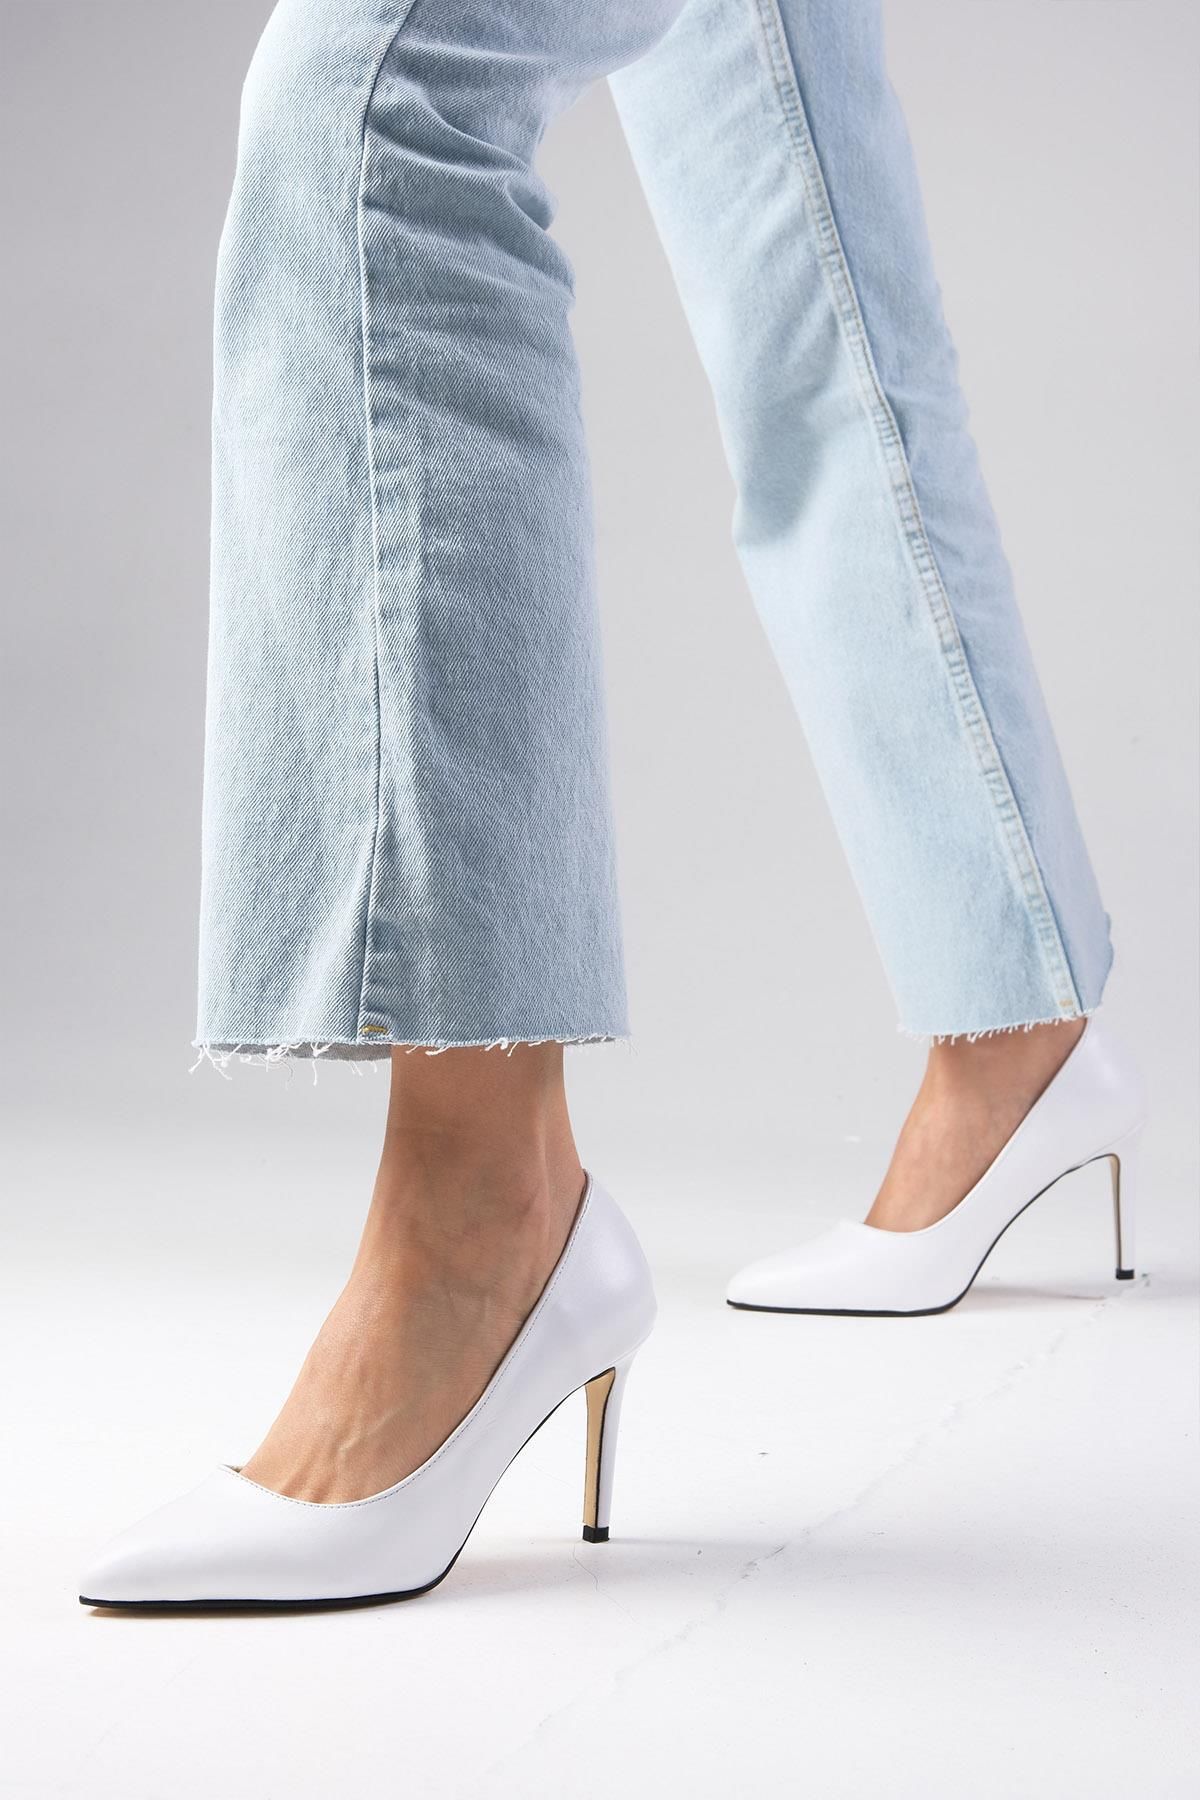 Mio Gusto Elora Hakiki Deri Beyaz Renk Kadın Stiletto Ayakkabı